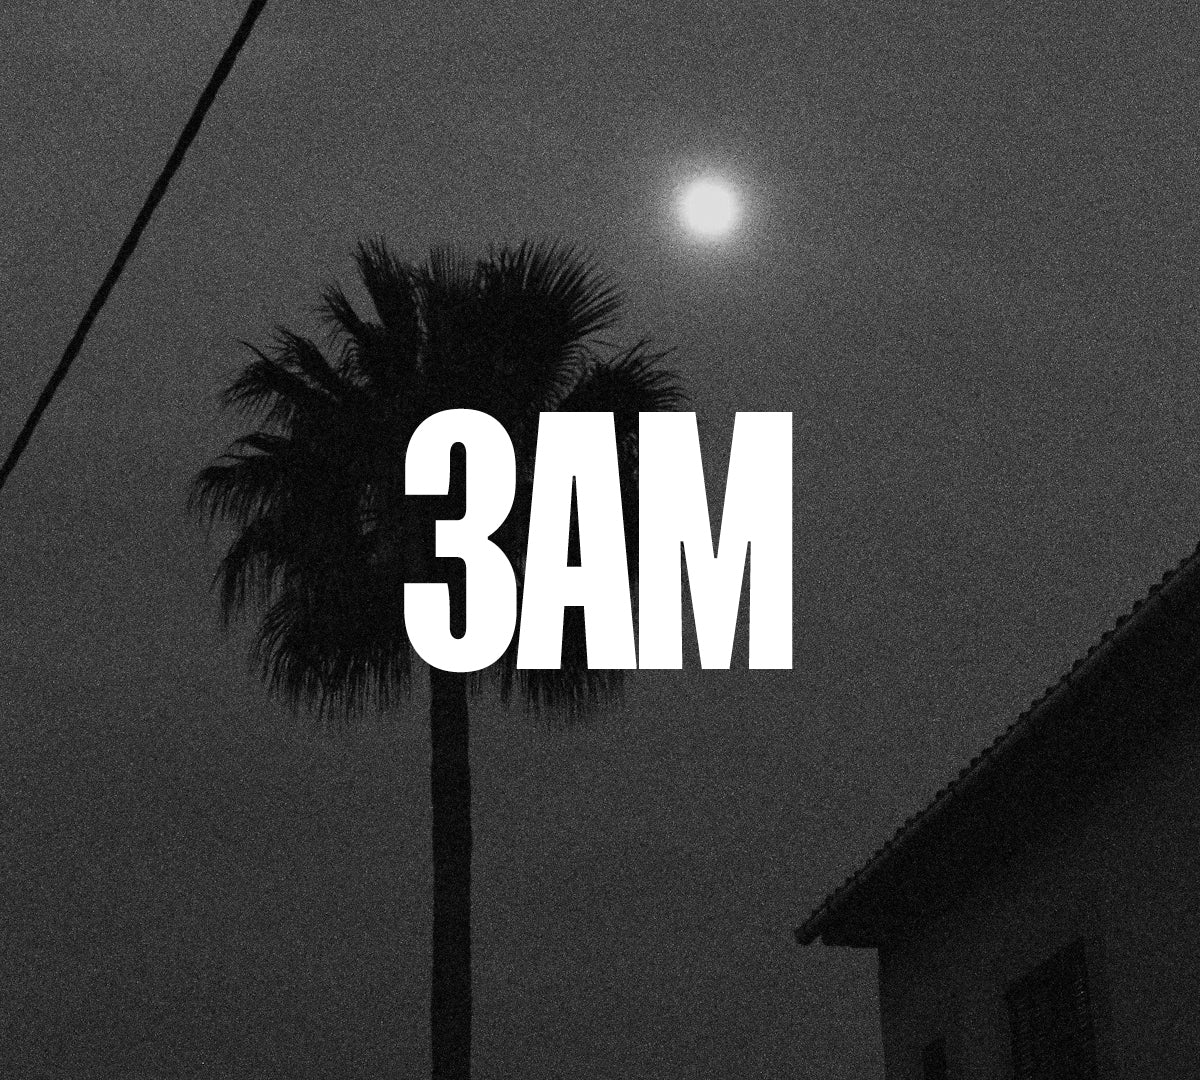 Moon Flower extrait de parfum by Perfumehead. Time 3 a.m.